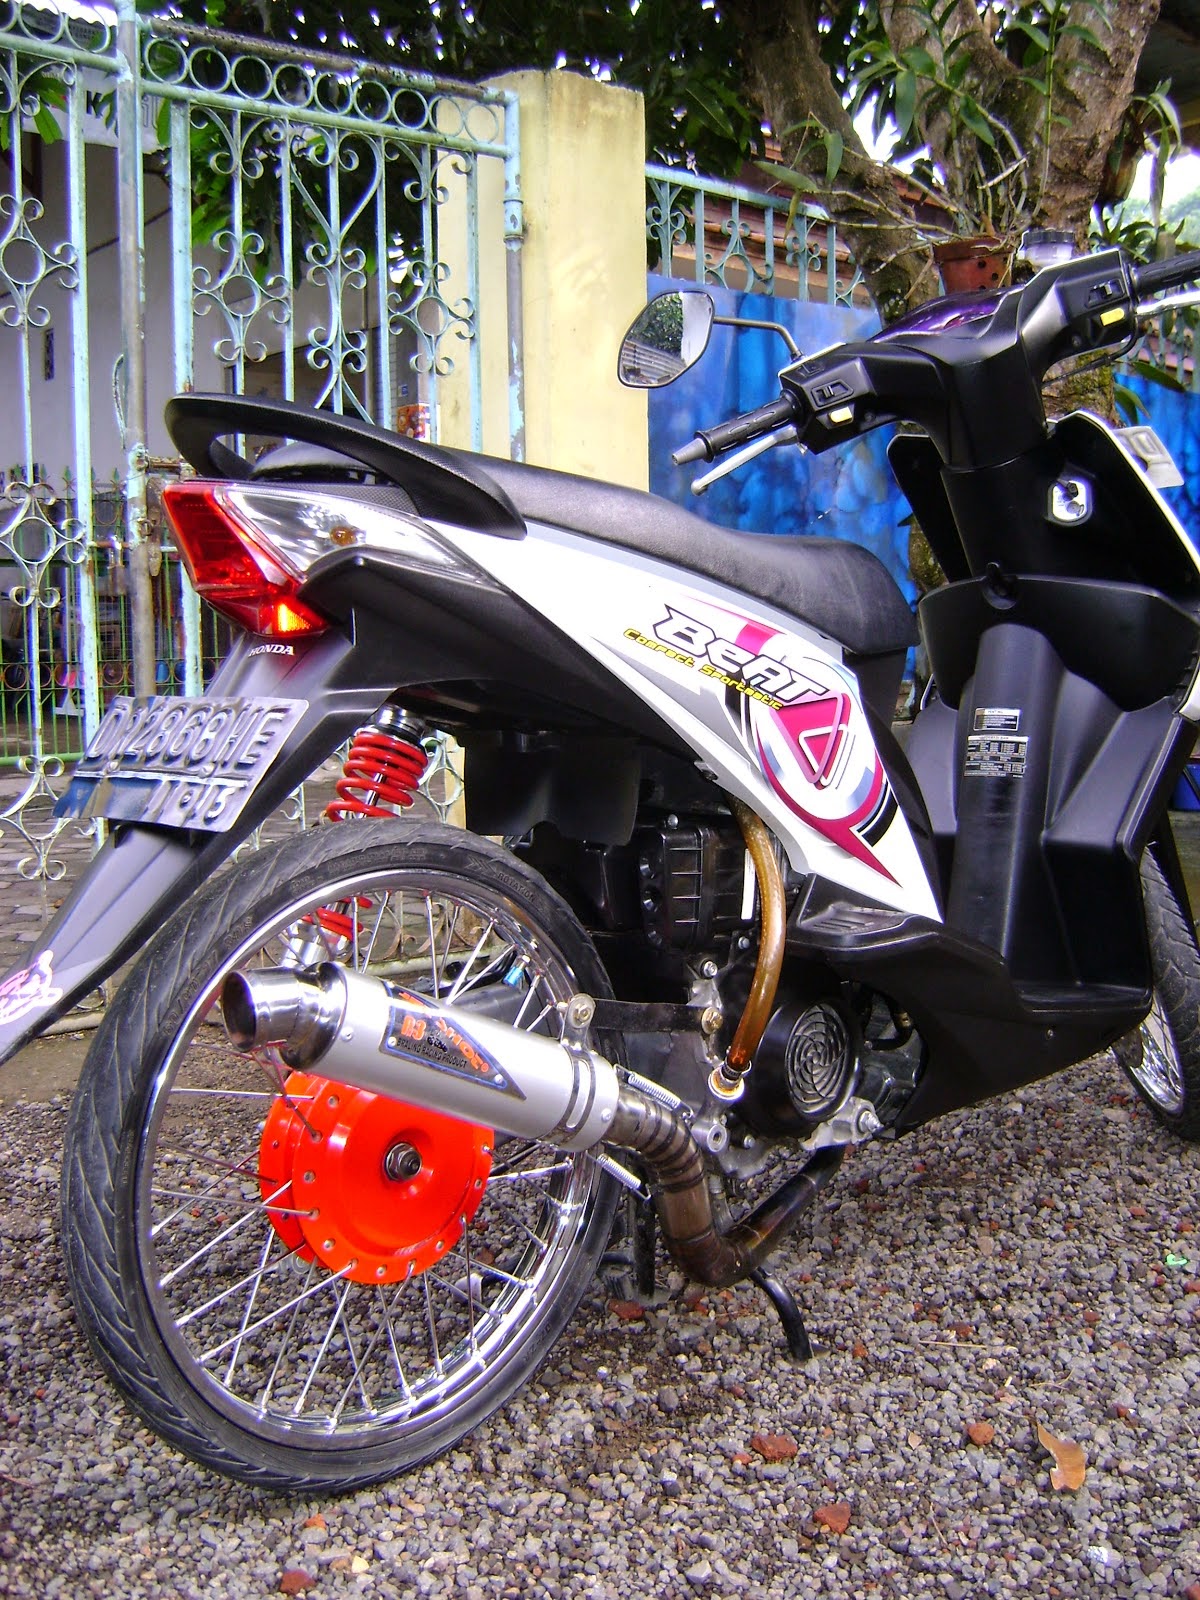 Foto Modifikasi Honda Beat Sporty Keren Terbaru Modifikasi Motor